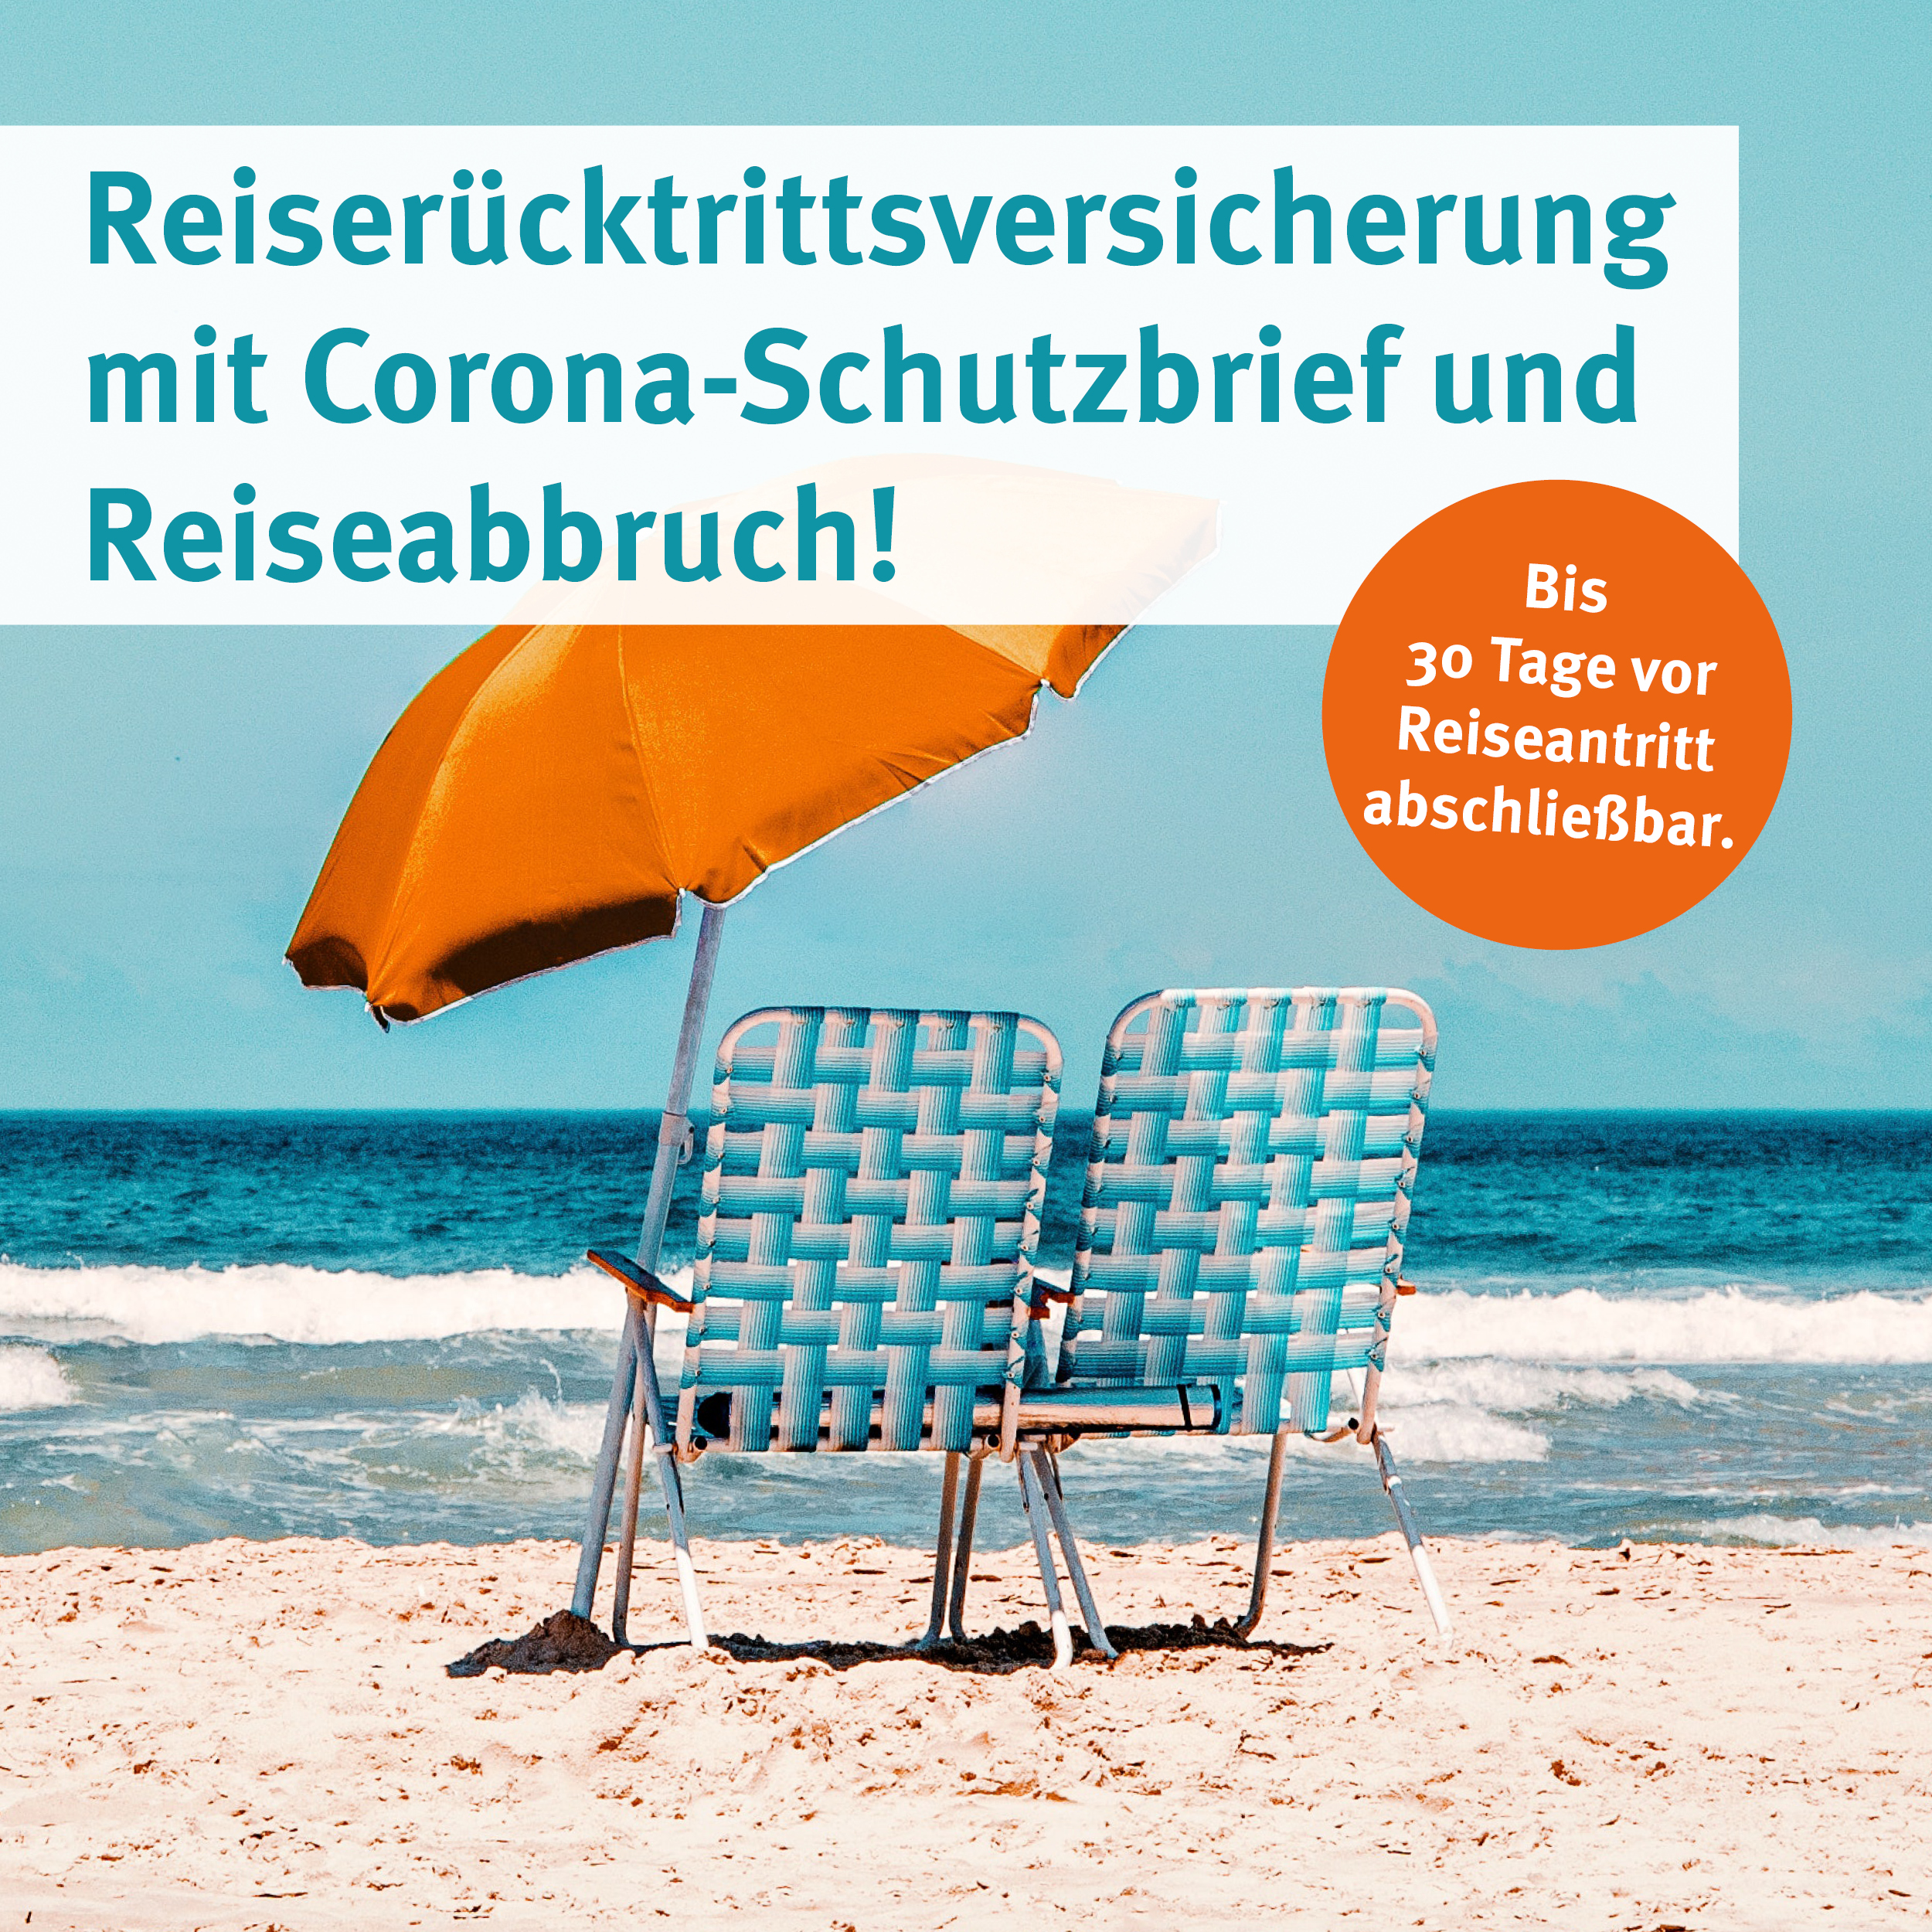 Reiserücktrittsversicherung mit Corona-Schutzbrief und Reiseabbruch!